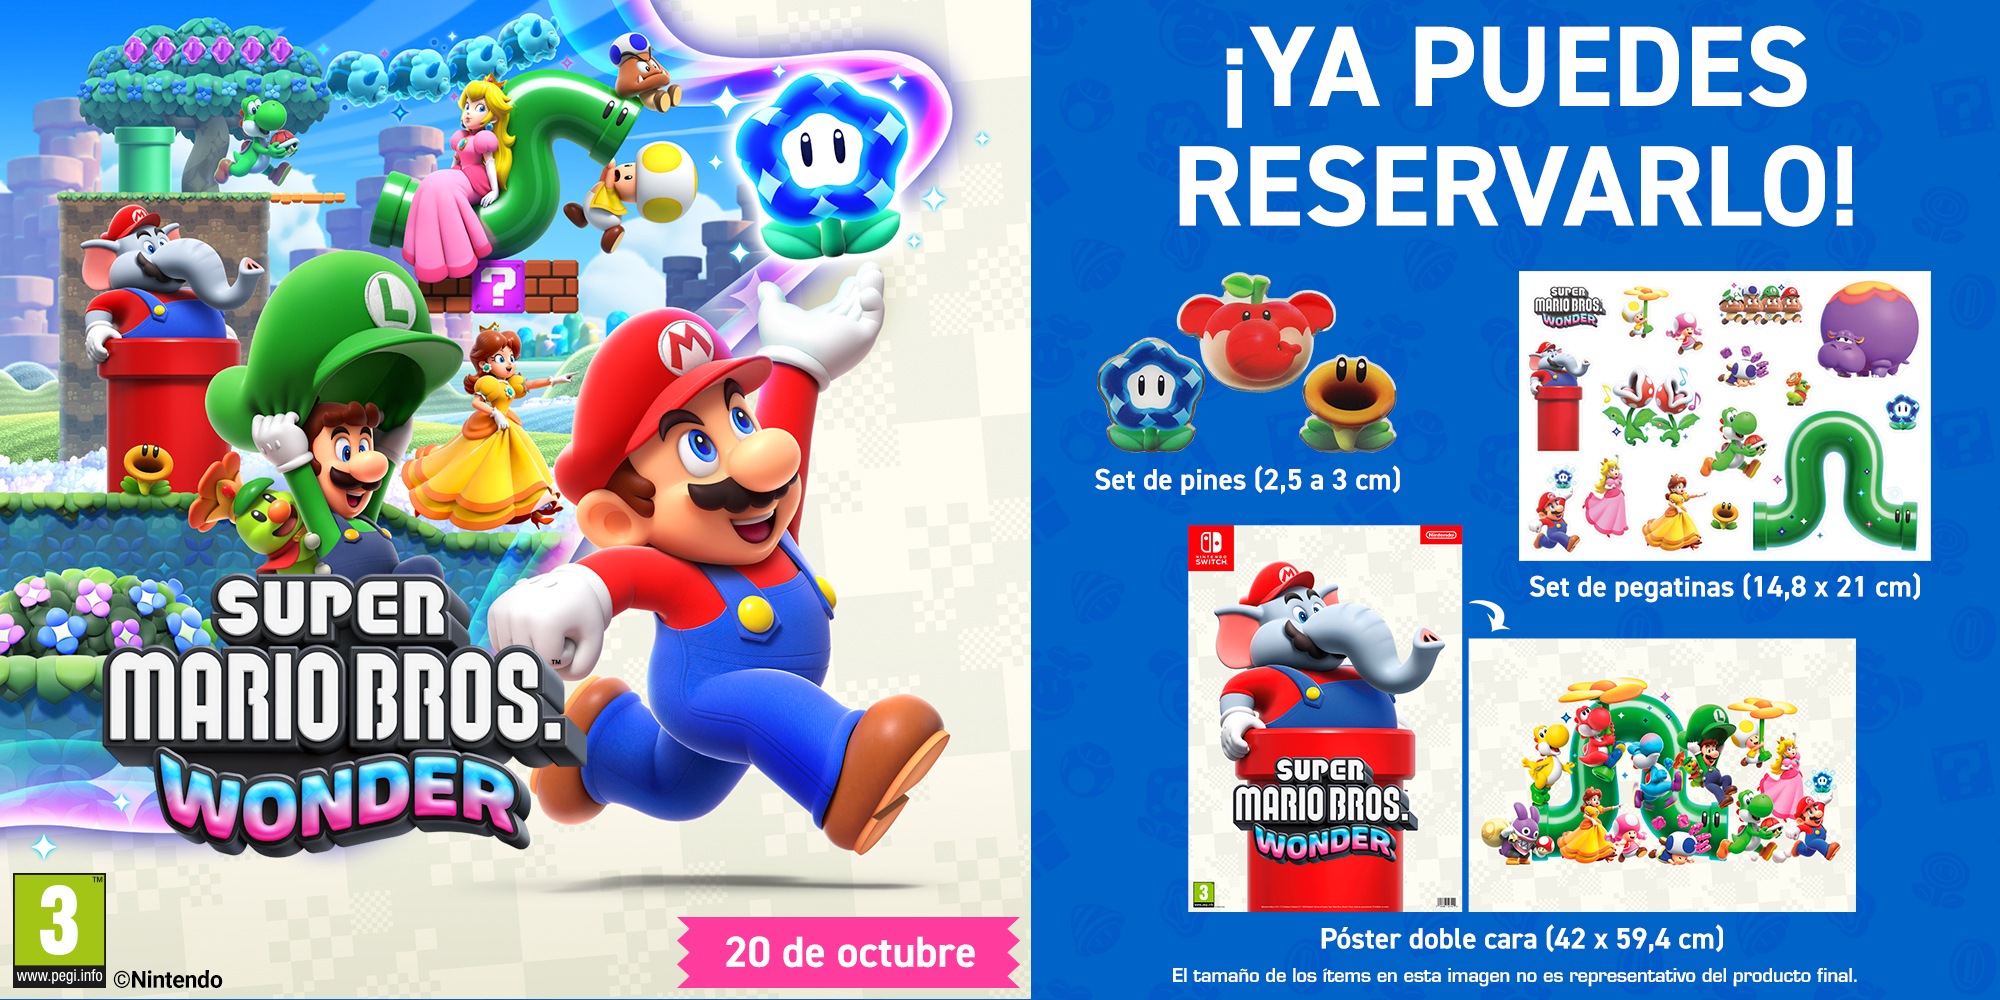 Super Mario Bros. Wonder + set pegatinas + poster - NUEVO tienda online  Super Mario Bros. Wonder + set pegatinas + poster - NUEVO